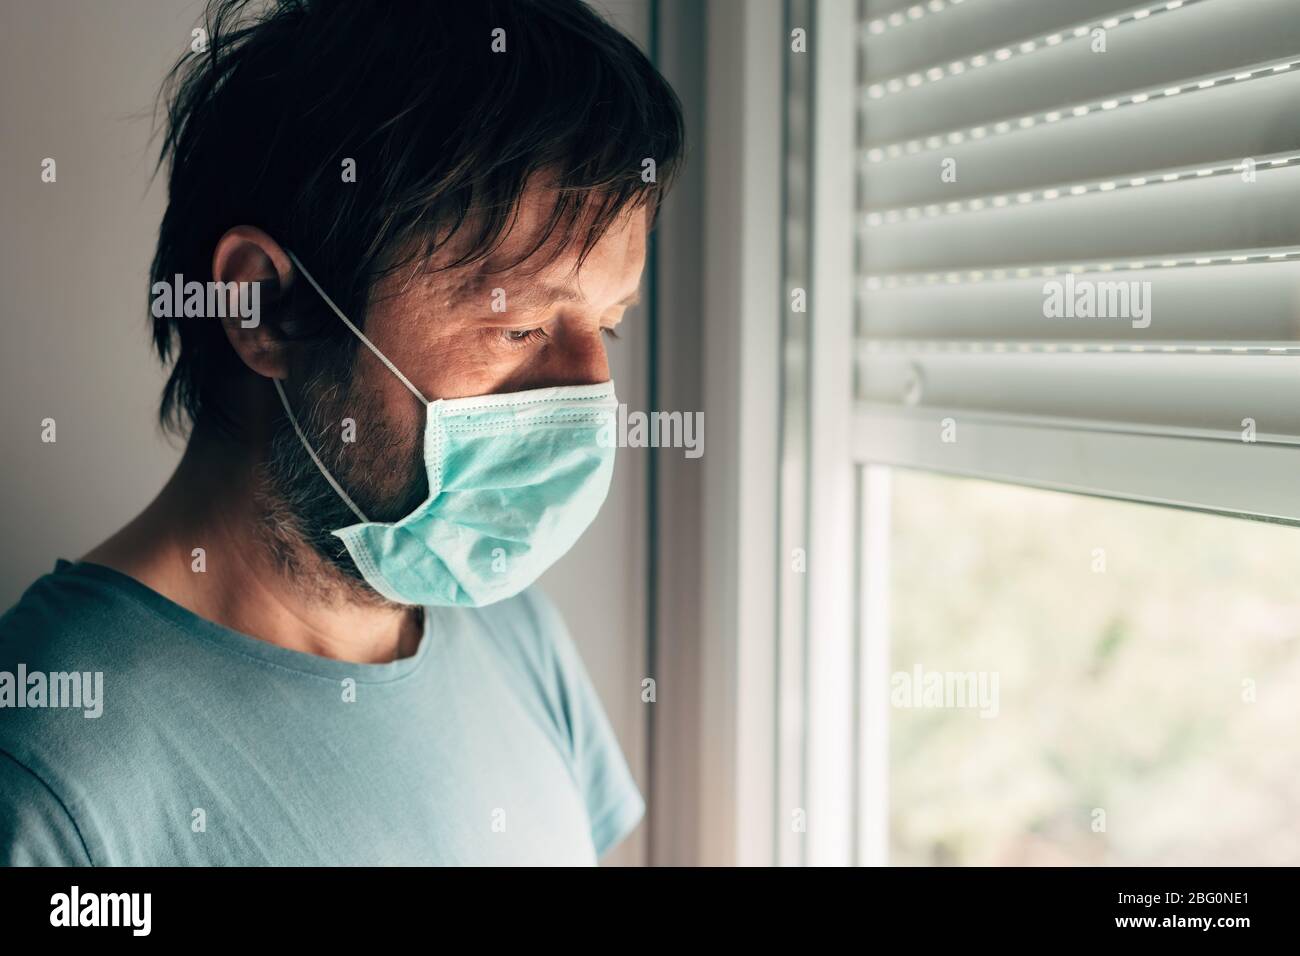 Depressiver Mann mit Schutzmaske in Selbstisolierung Quarantäne während des Virus-Ausbruchs Pandemie, Erwachsener Mann am Fenster stehend Stockfoto